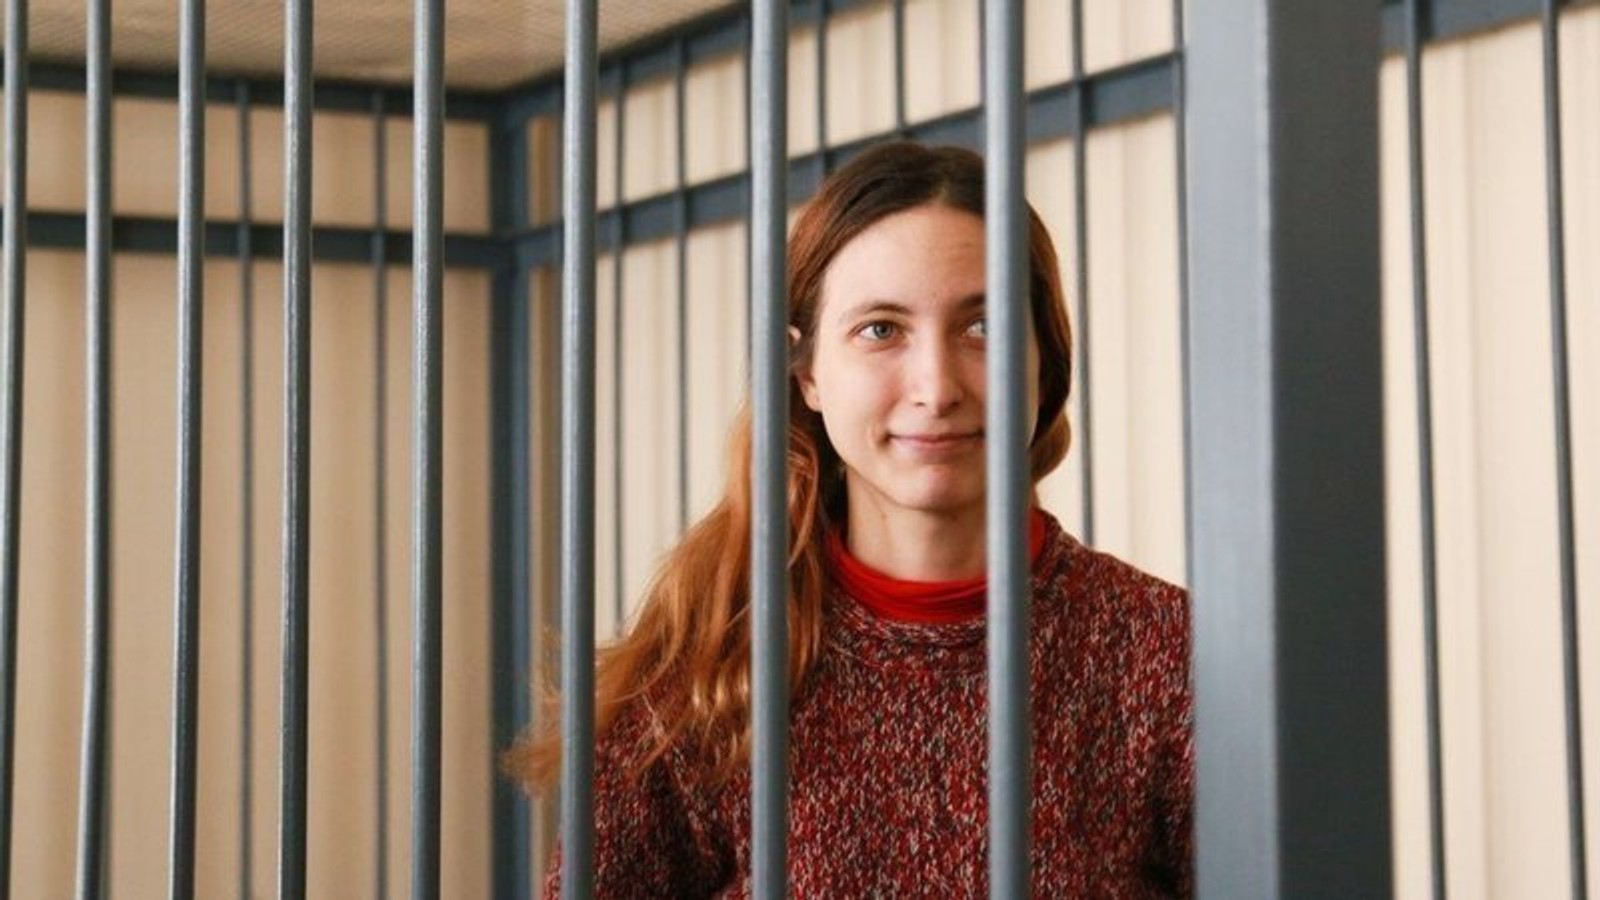 Художницу Сашу Скочиленко, арестованную за антивоенную акцию, на несколько недель отправили в психиатрическую больницу на экспертизу